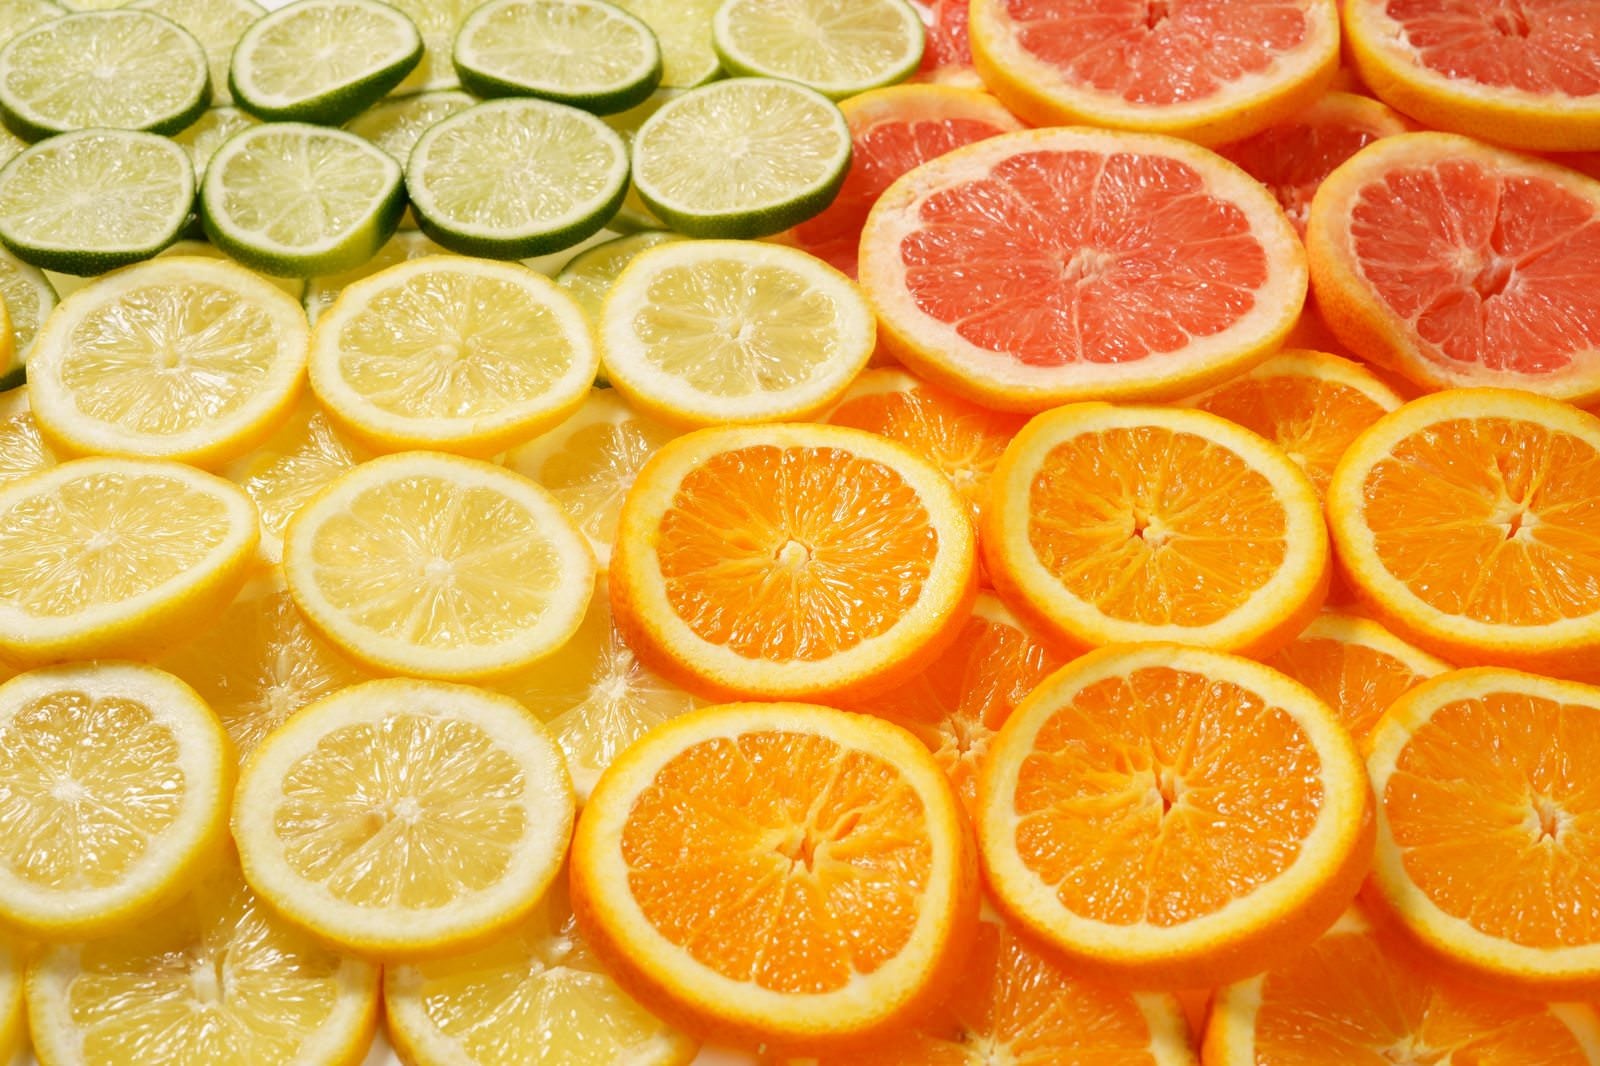 「オレンジやグレープフルーツのカットフルーツ」の写真